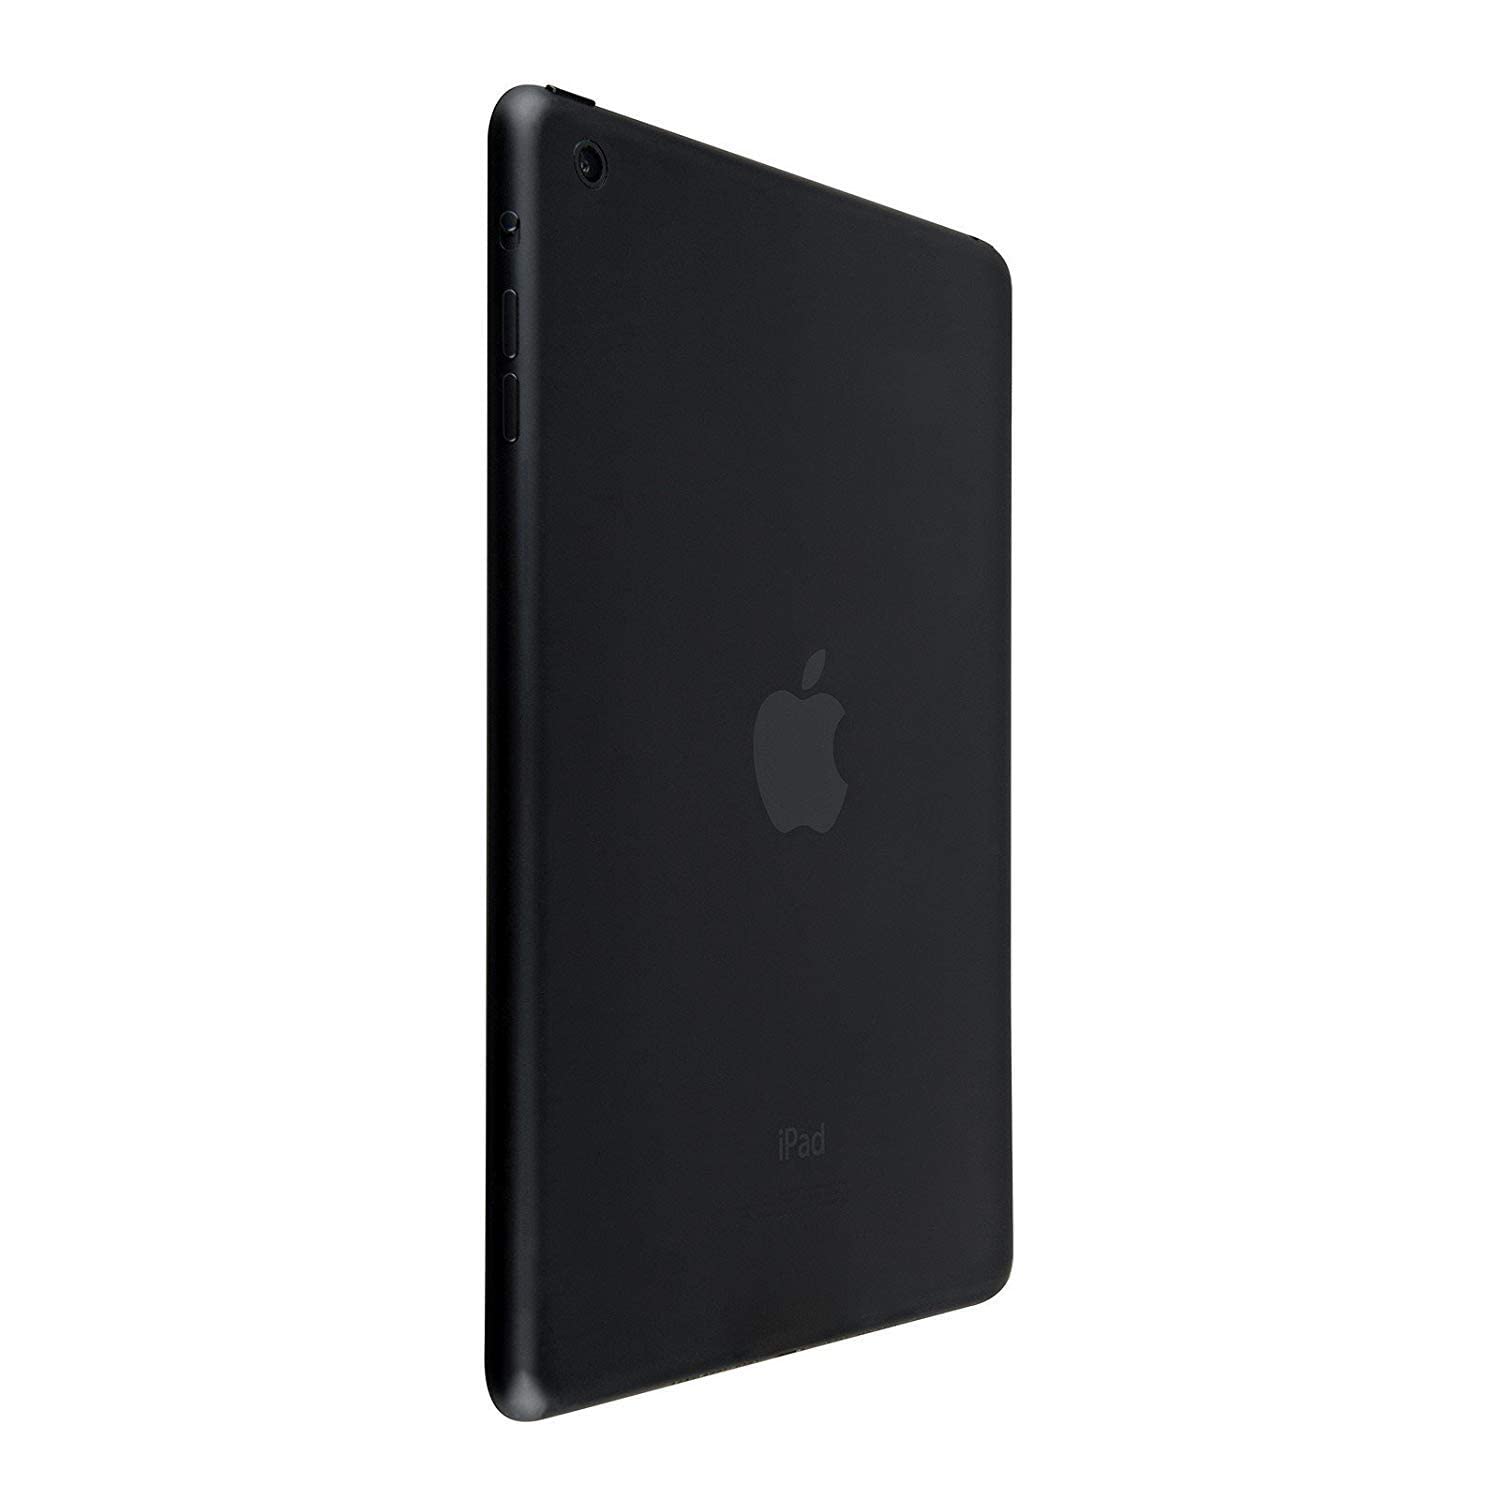 Apple iPad Mini 4, 32GB, Space Gray - WiFi (Renewed)